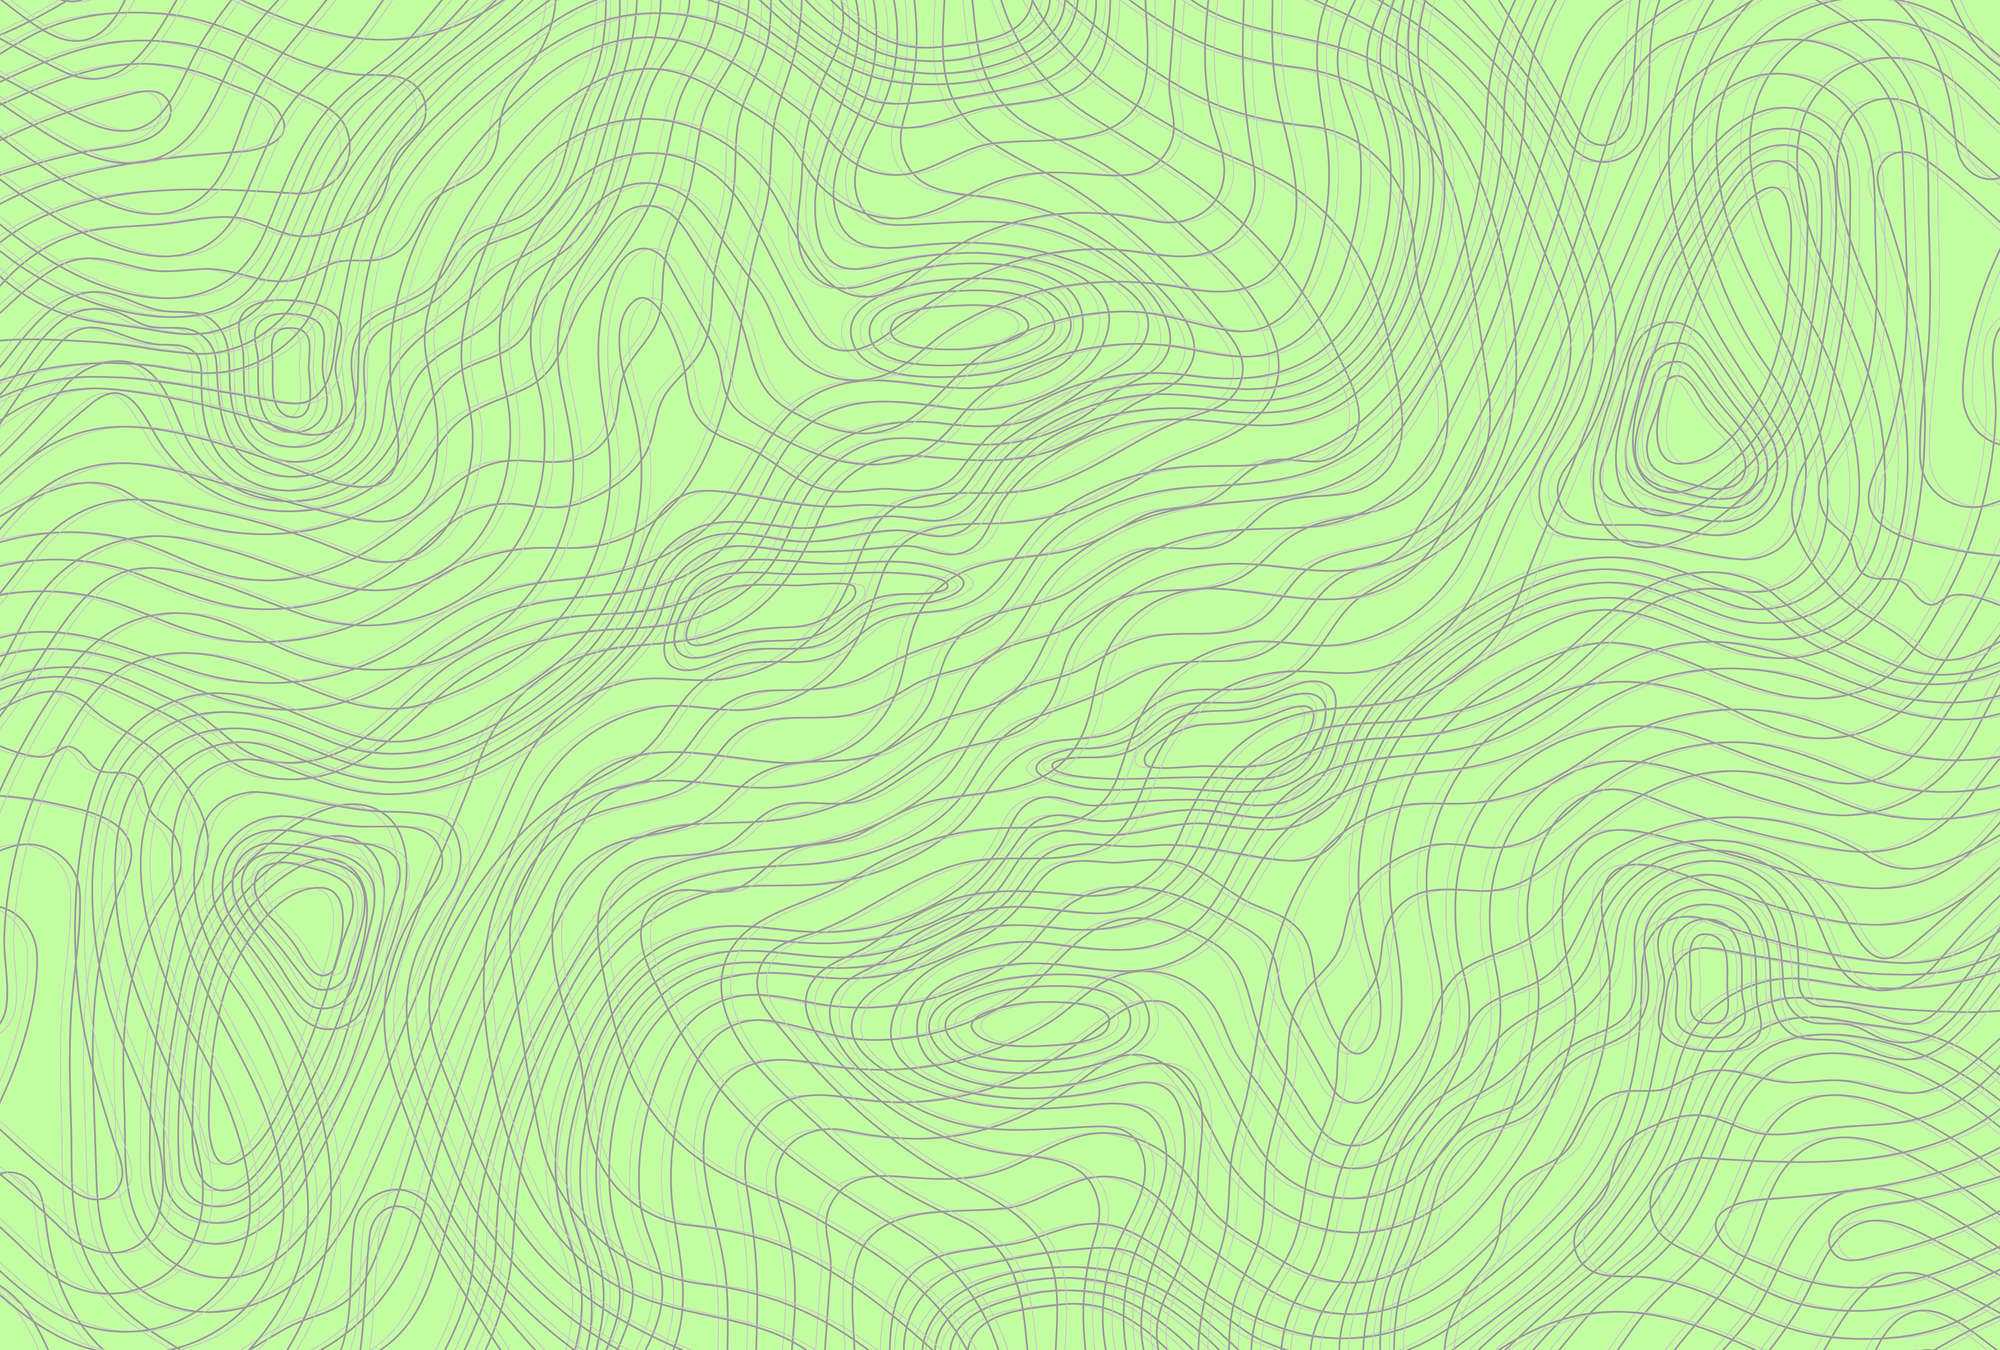             Papier peint vert avec design de lignes - vert, gris
        